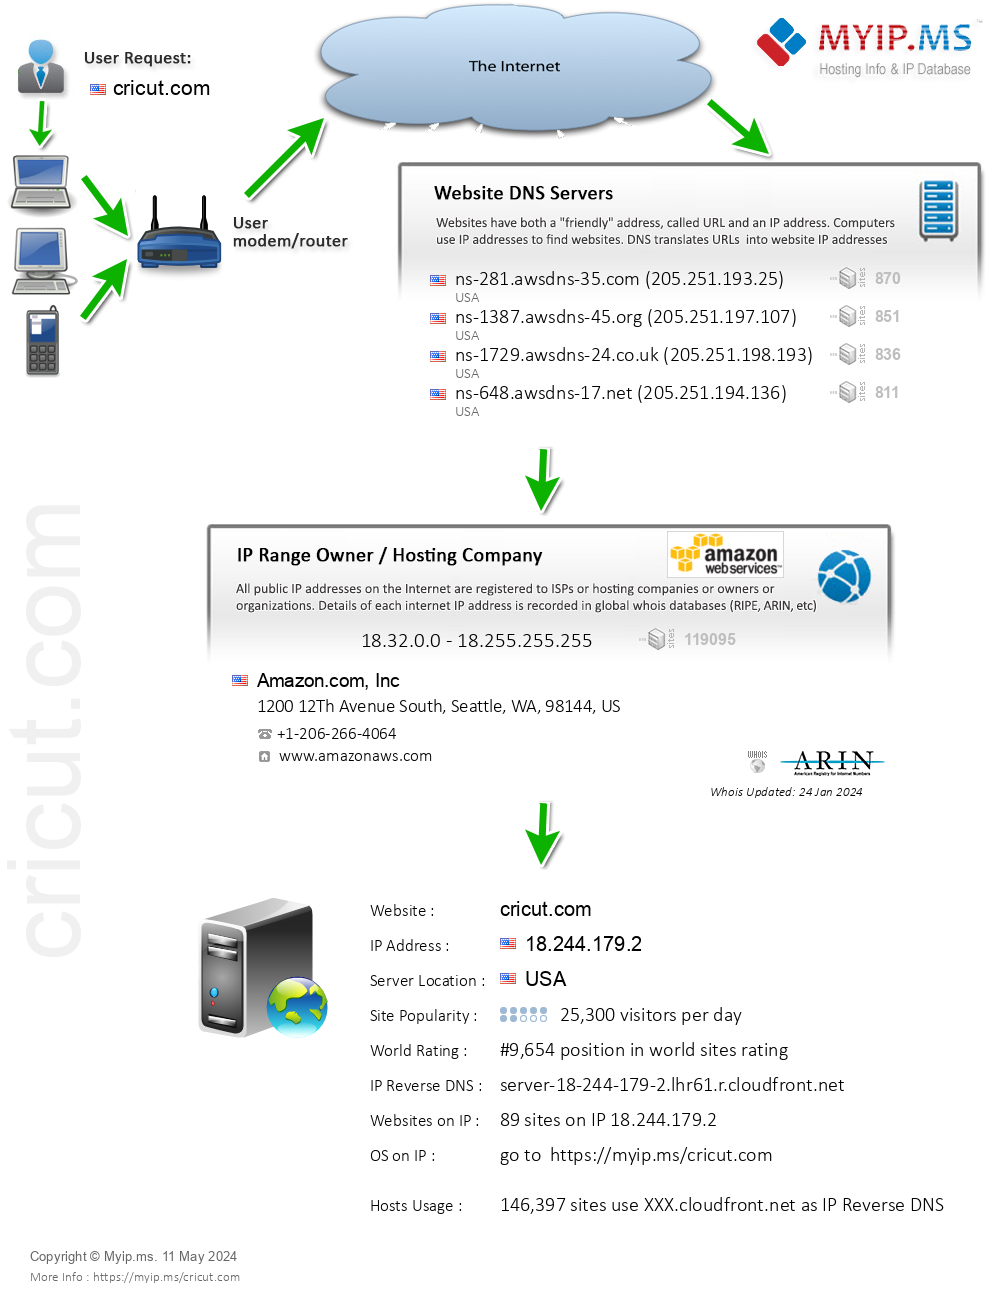 Cricut.com - Website Hosting Visual IP Diagram